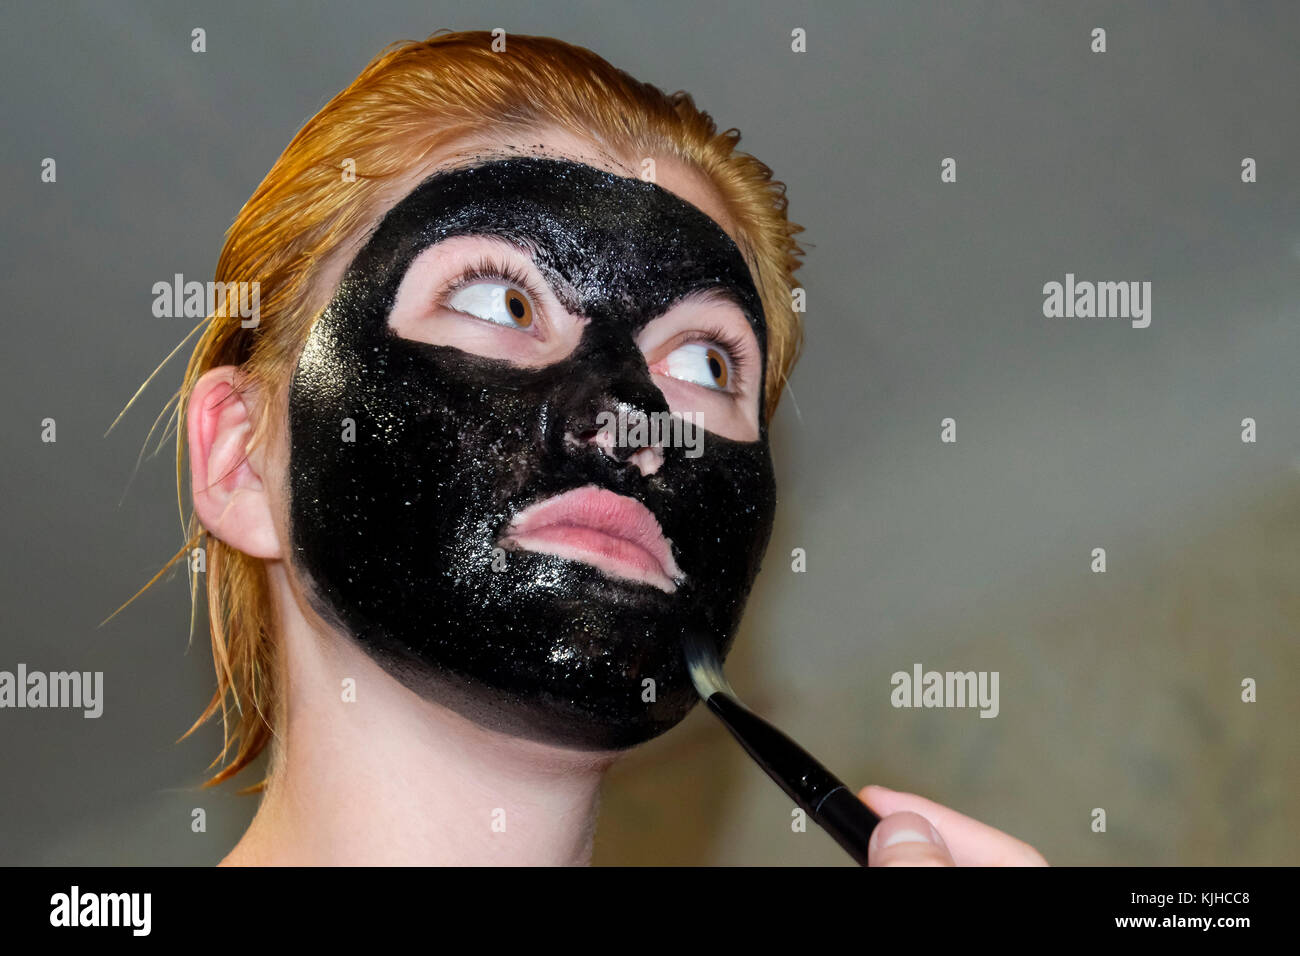 Mädchen in einem kosmetischen schwarze Maske. reinigende Maske von Aspirin  und Aktivkohle. Schwarz kosmetische Gesichtsmaske Stockfotografie - Alamy